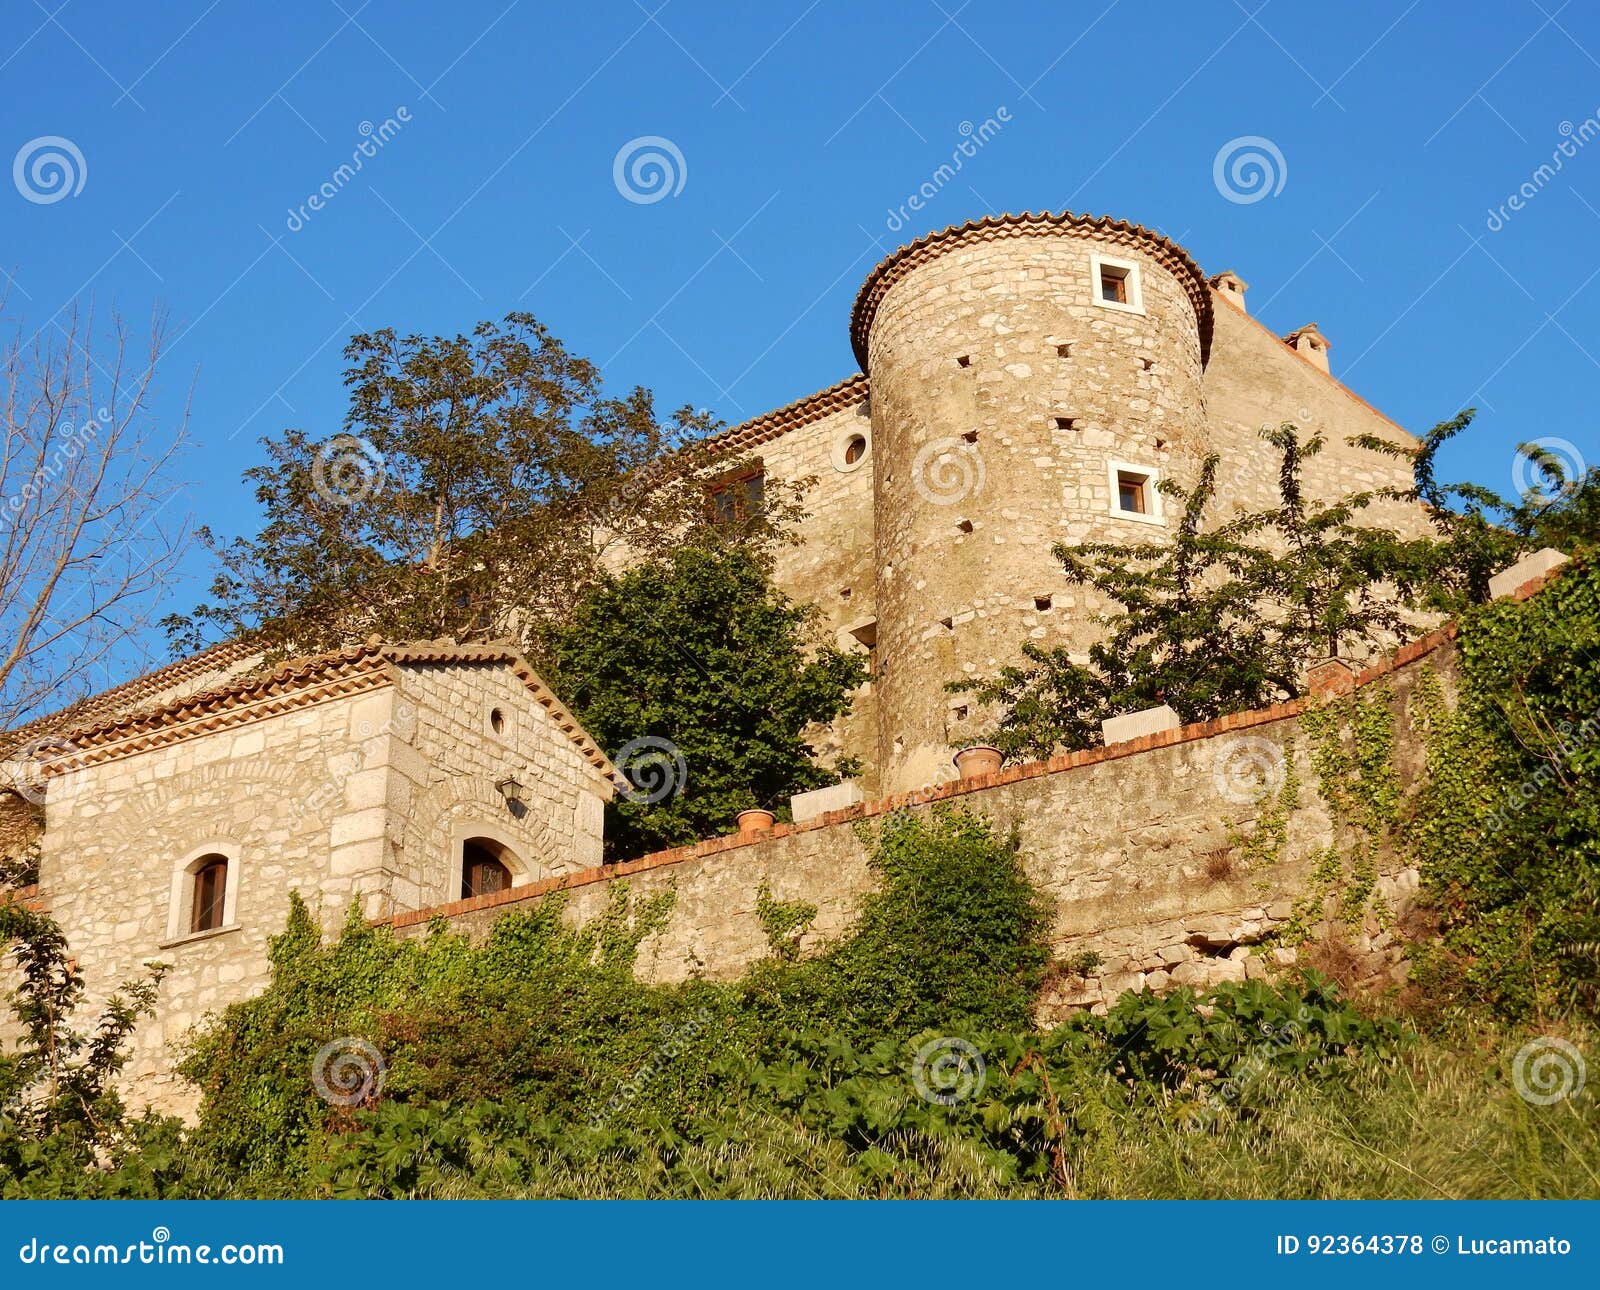 glimpse of the castle of gesualdo